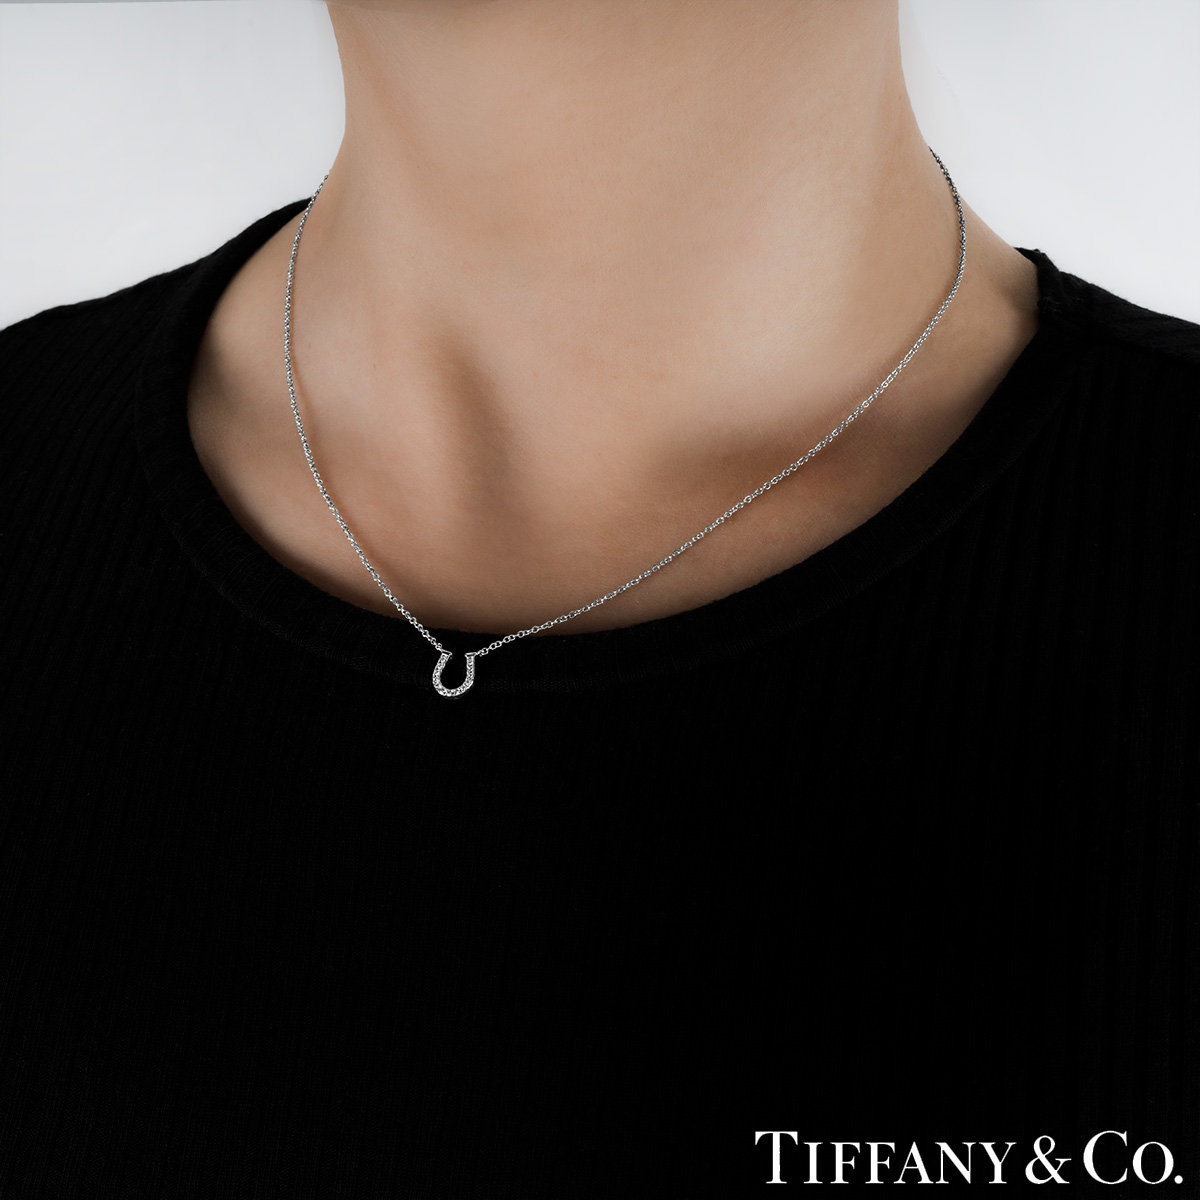 TIFFANY & CO - Platinum and diamond horseshoe pendant necklace |  Selfridges.com